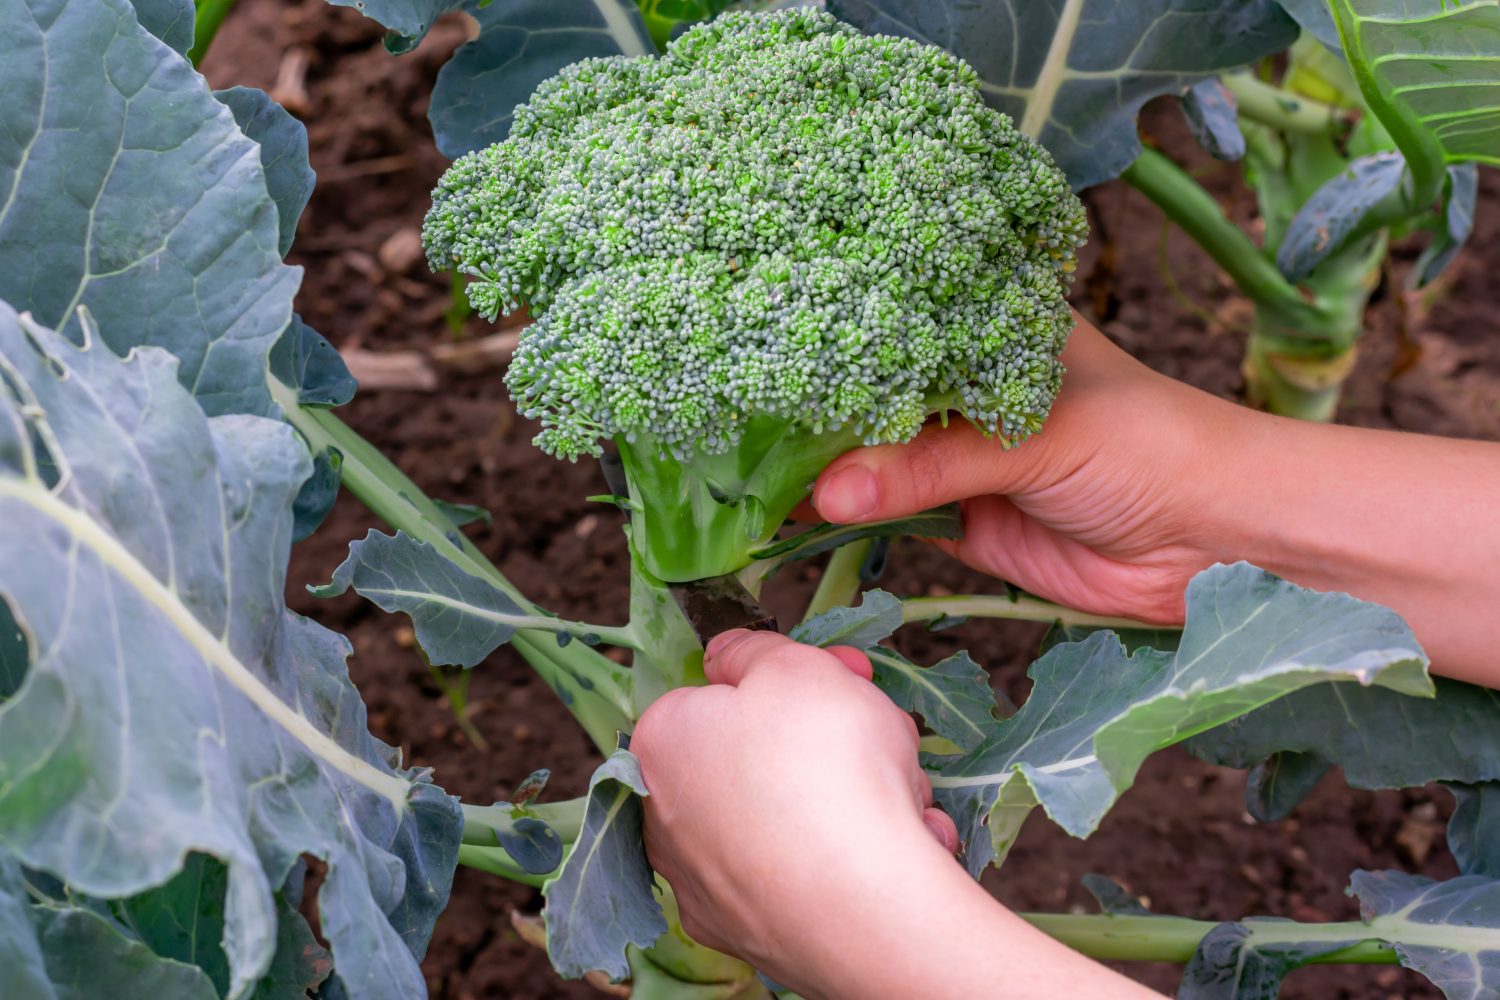 Le mani dell'agricoltore femminile tagliano il grande cavolfiore verde dei broccoli sul letto del giardino.  Verdure biologiche di stagione di campagna.